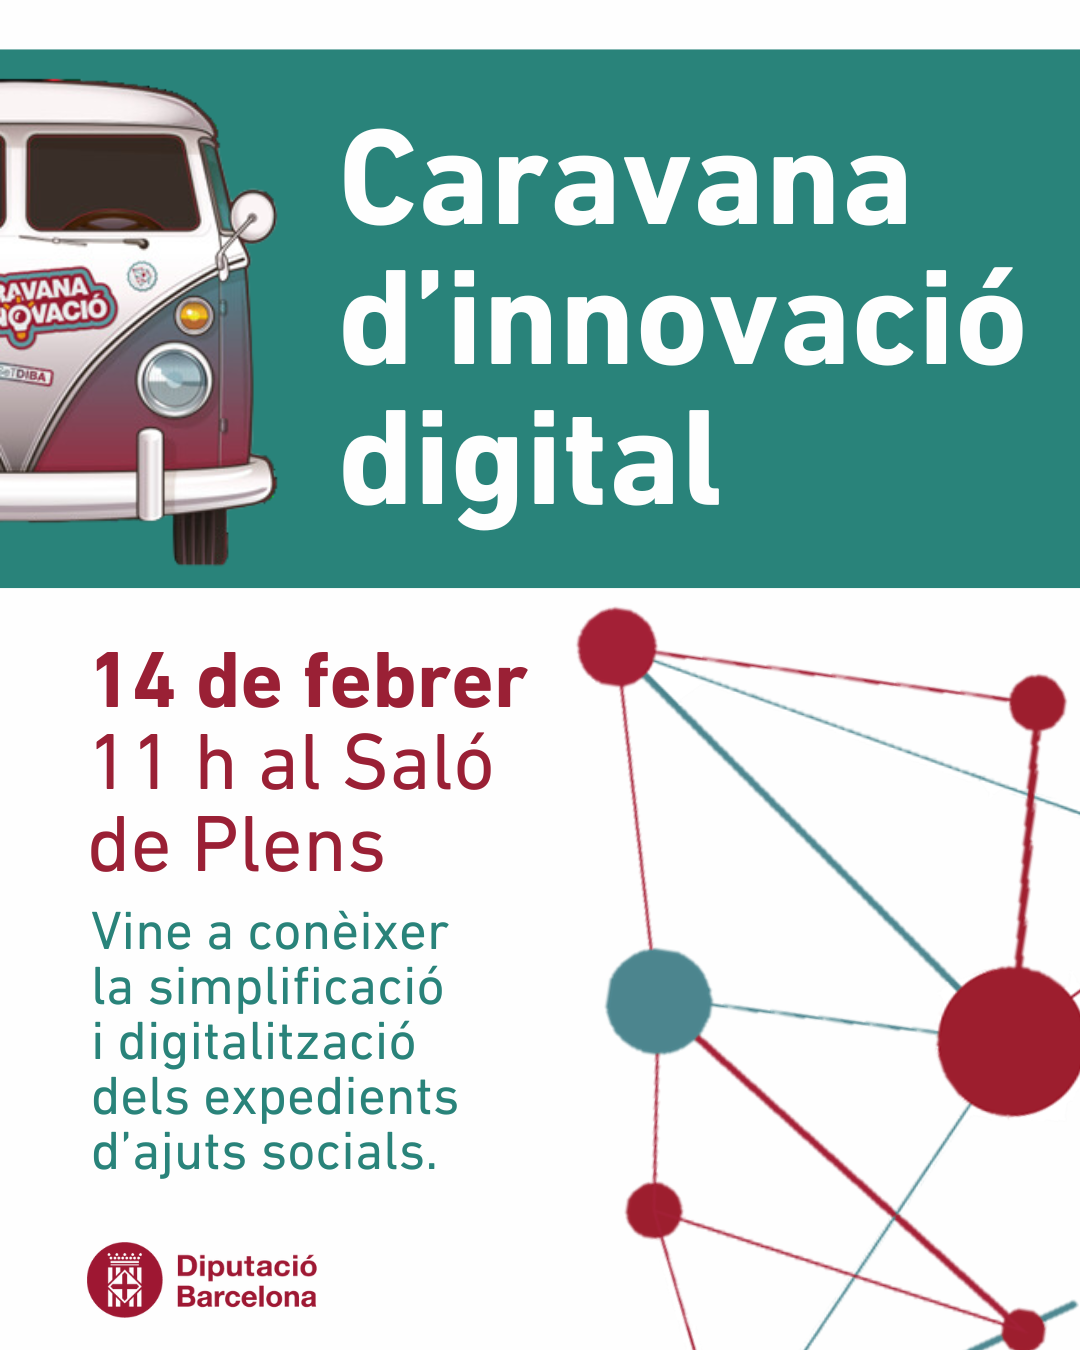 Caravana d'innovació digital a Olesa de Montserrat.